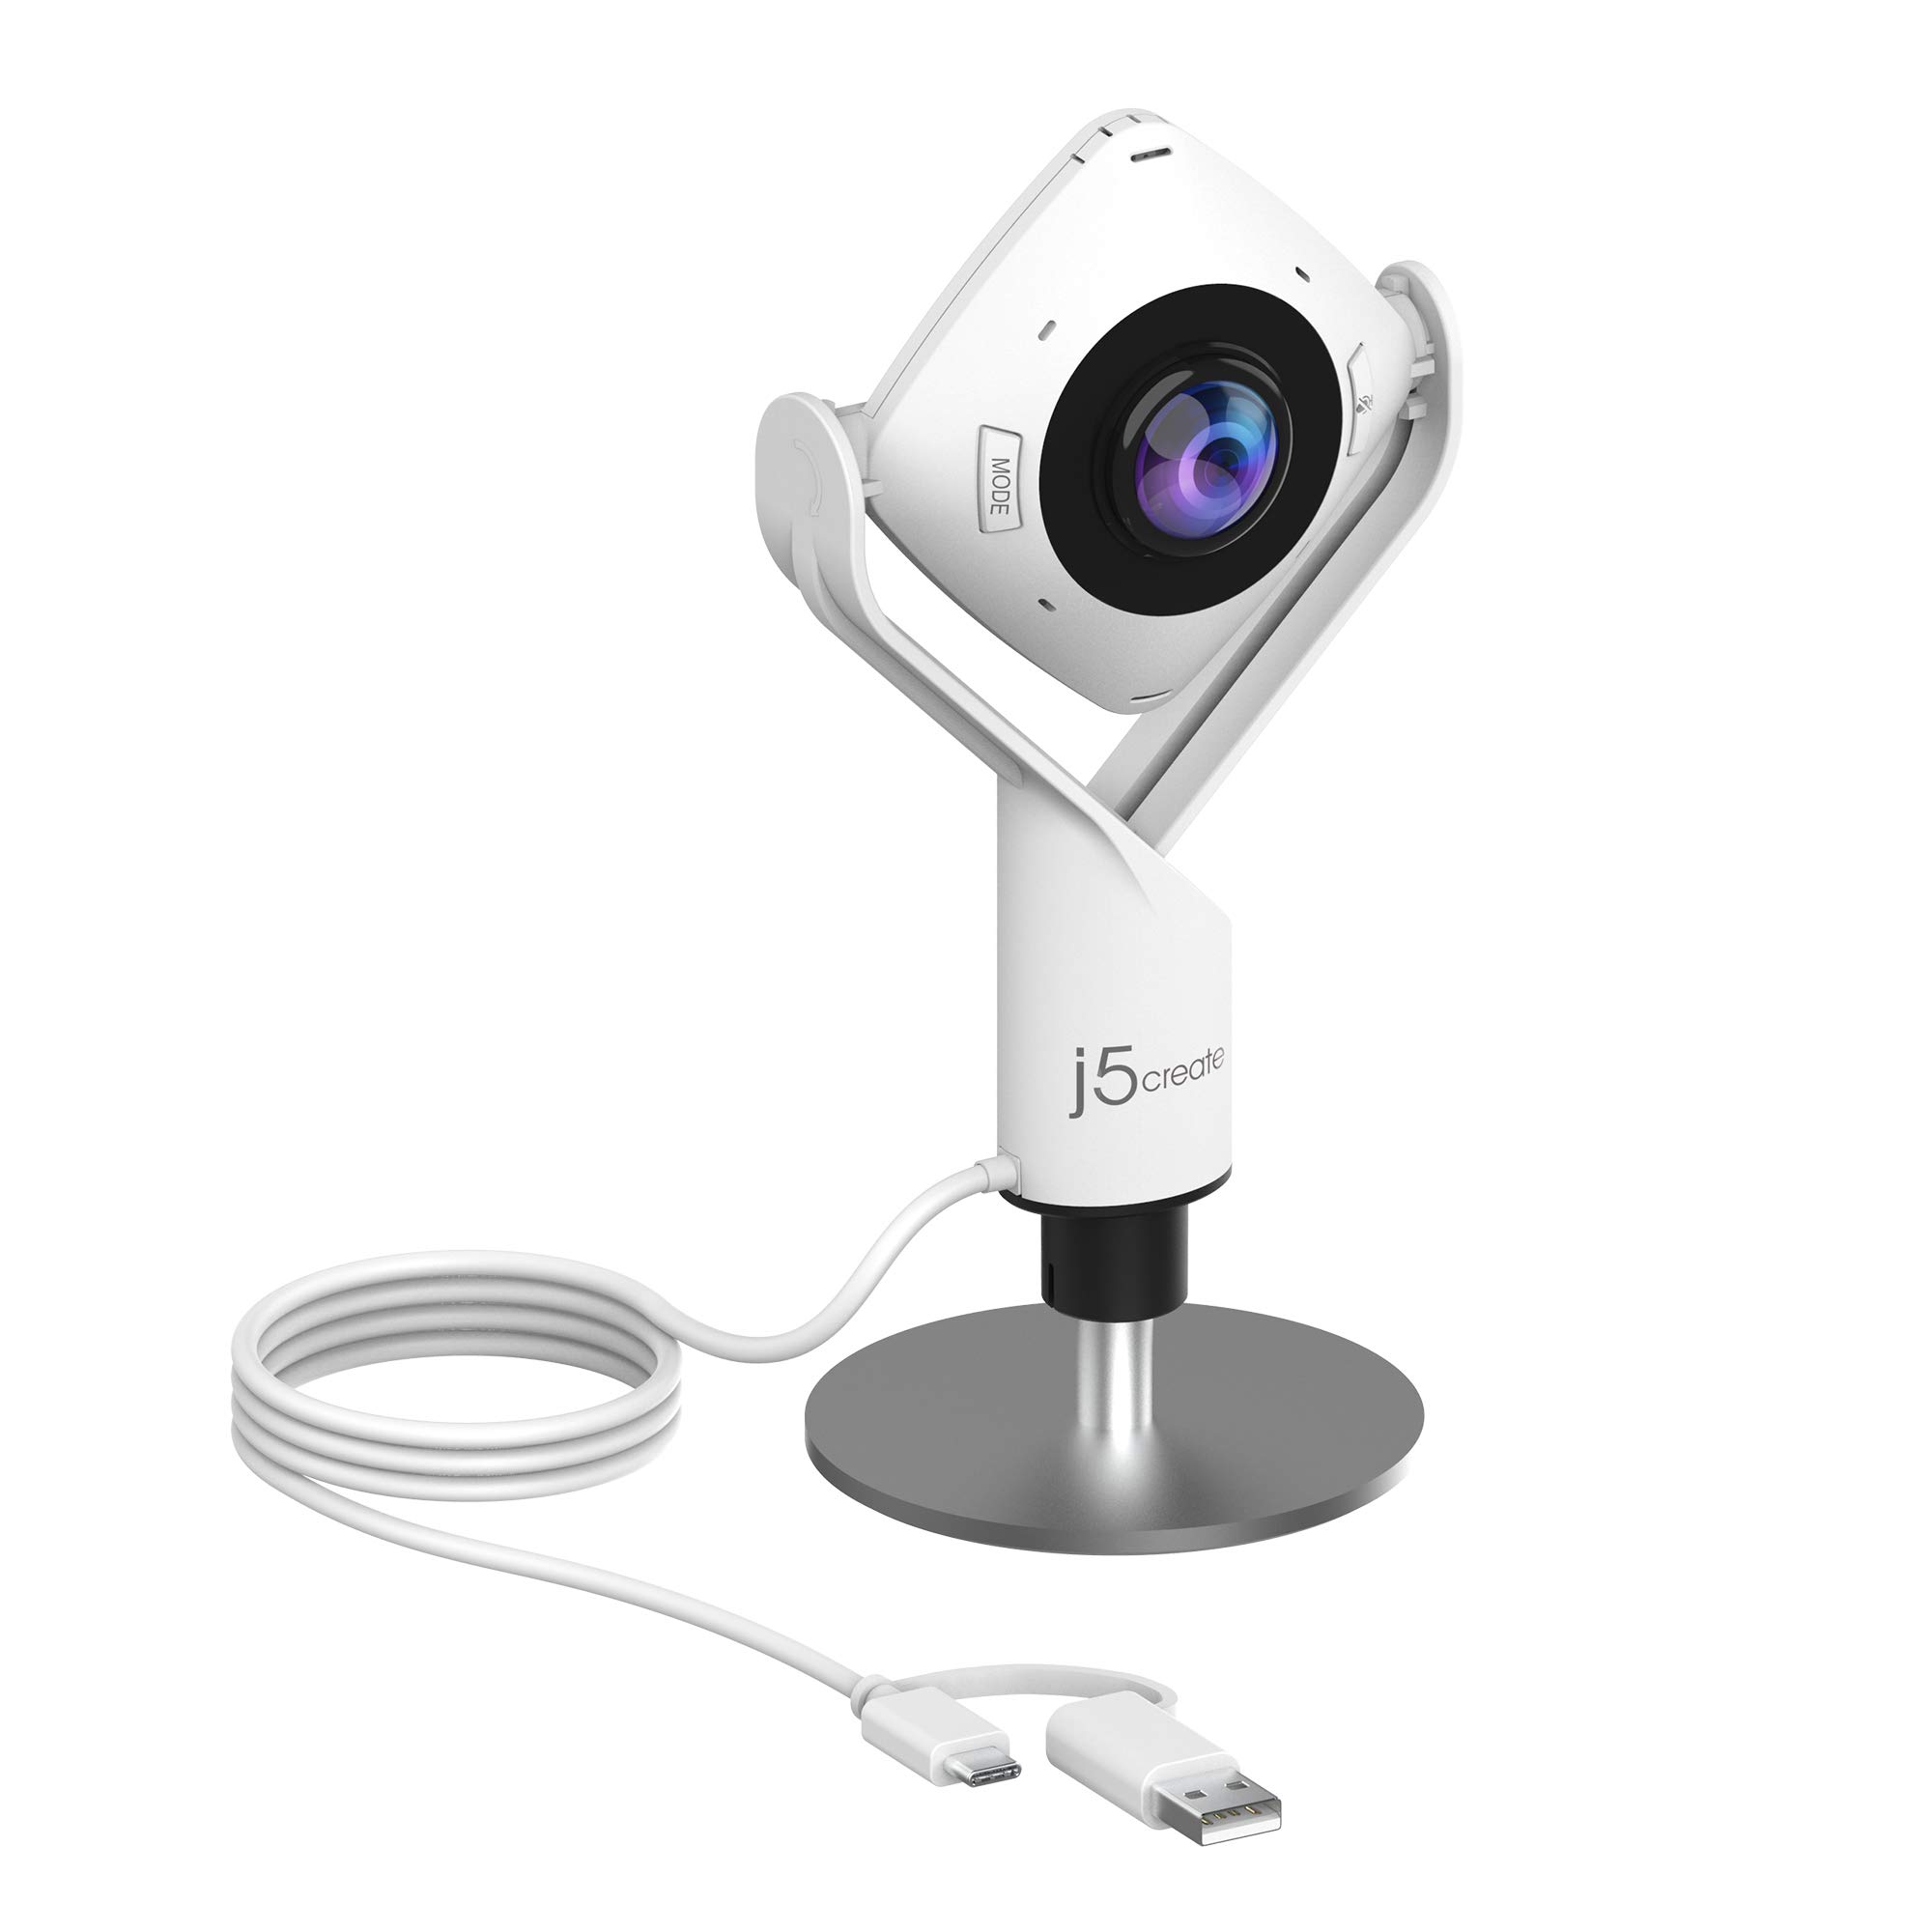 j5create 360 度全方位会议网络摄像头 - 1080P 高清视频会议摄像头，带高保真麦克风，USB-...